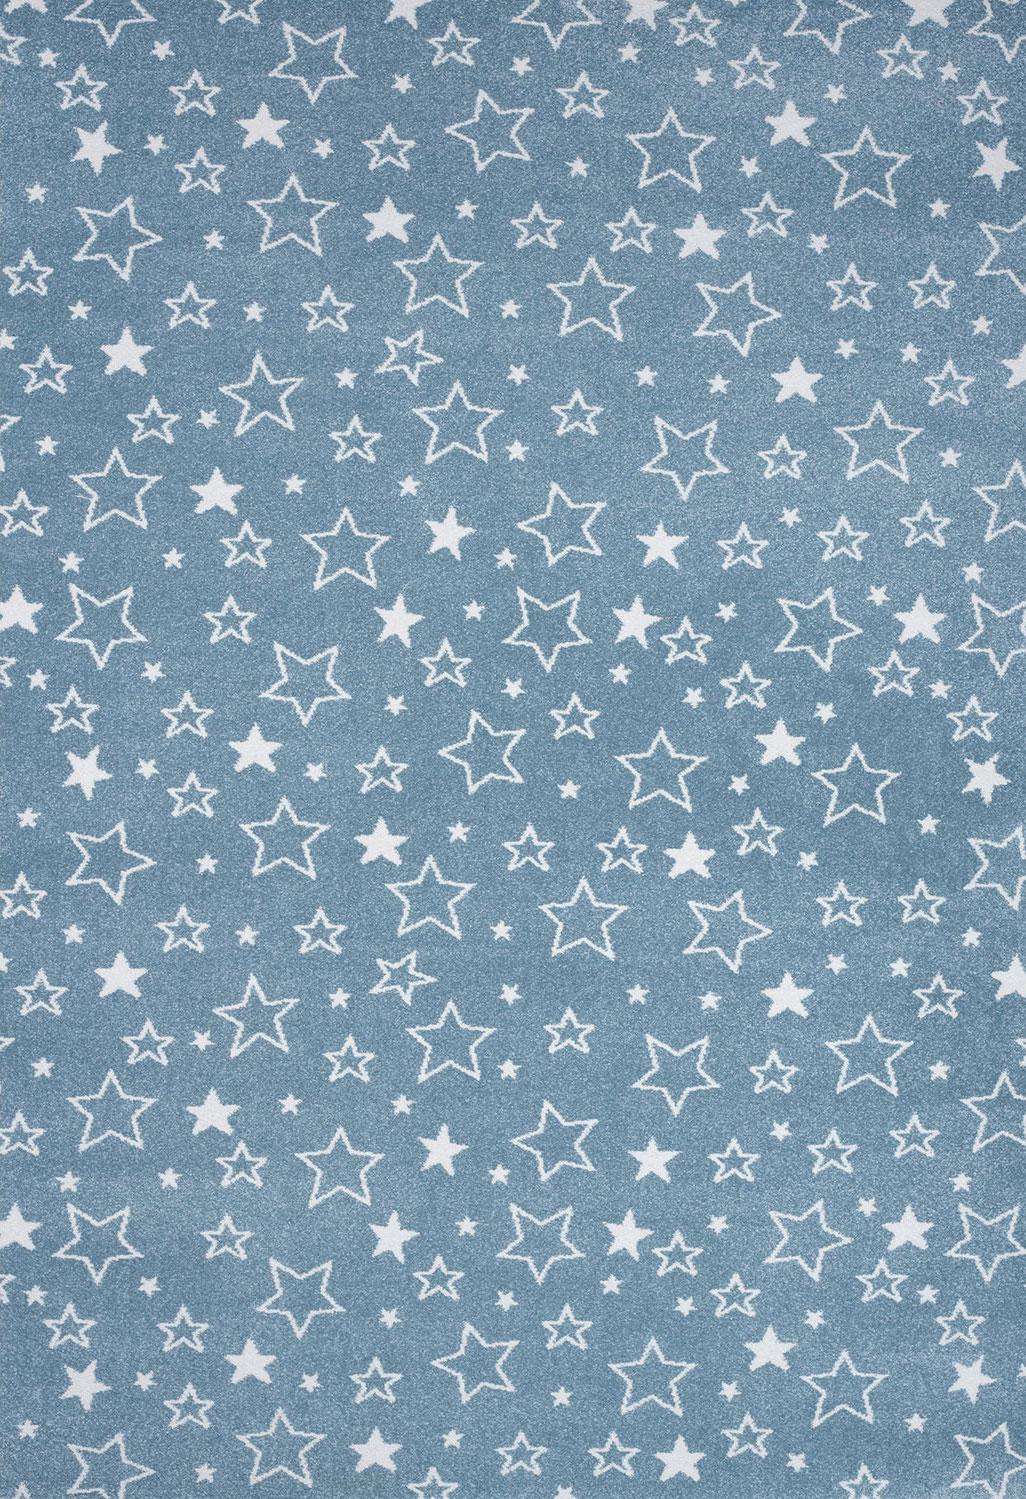 Παιδικό χαλί Diamond kids 8468/231 πετρόλ αστεράκια - ΣΕΤ (0,70x1,50)x2 0,70x2,20 Colore Colori